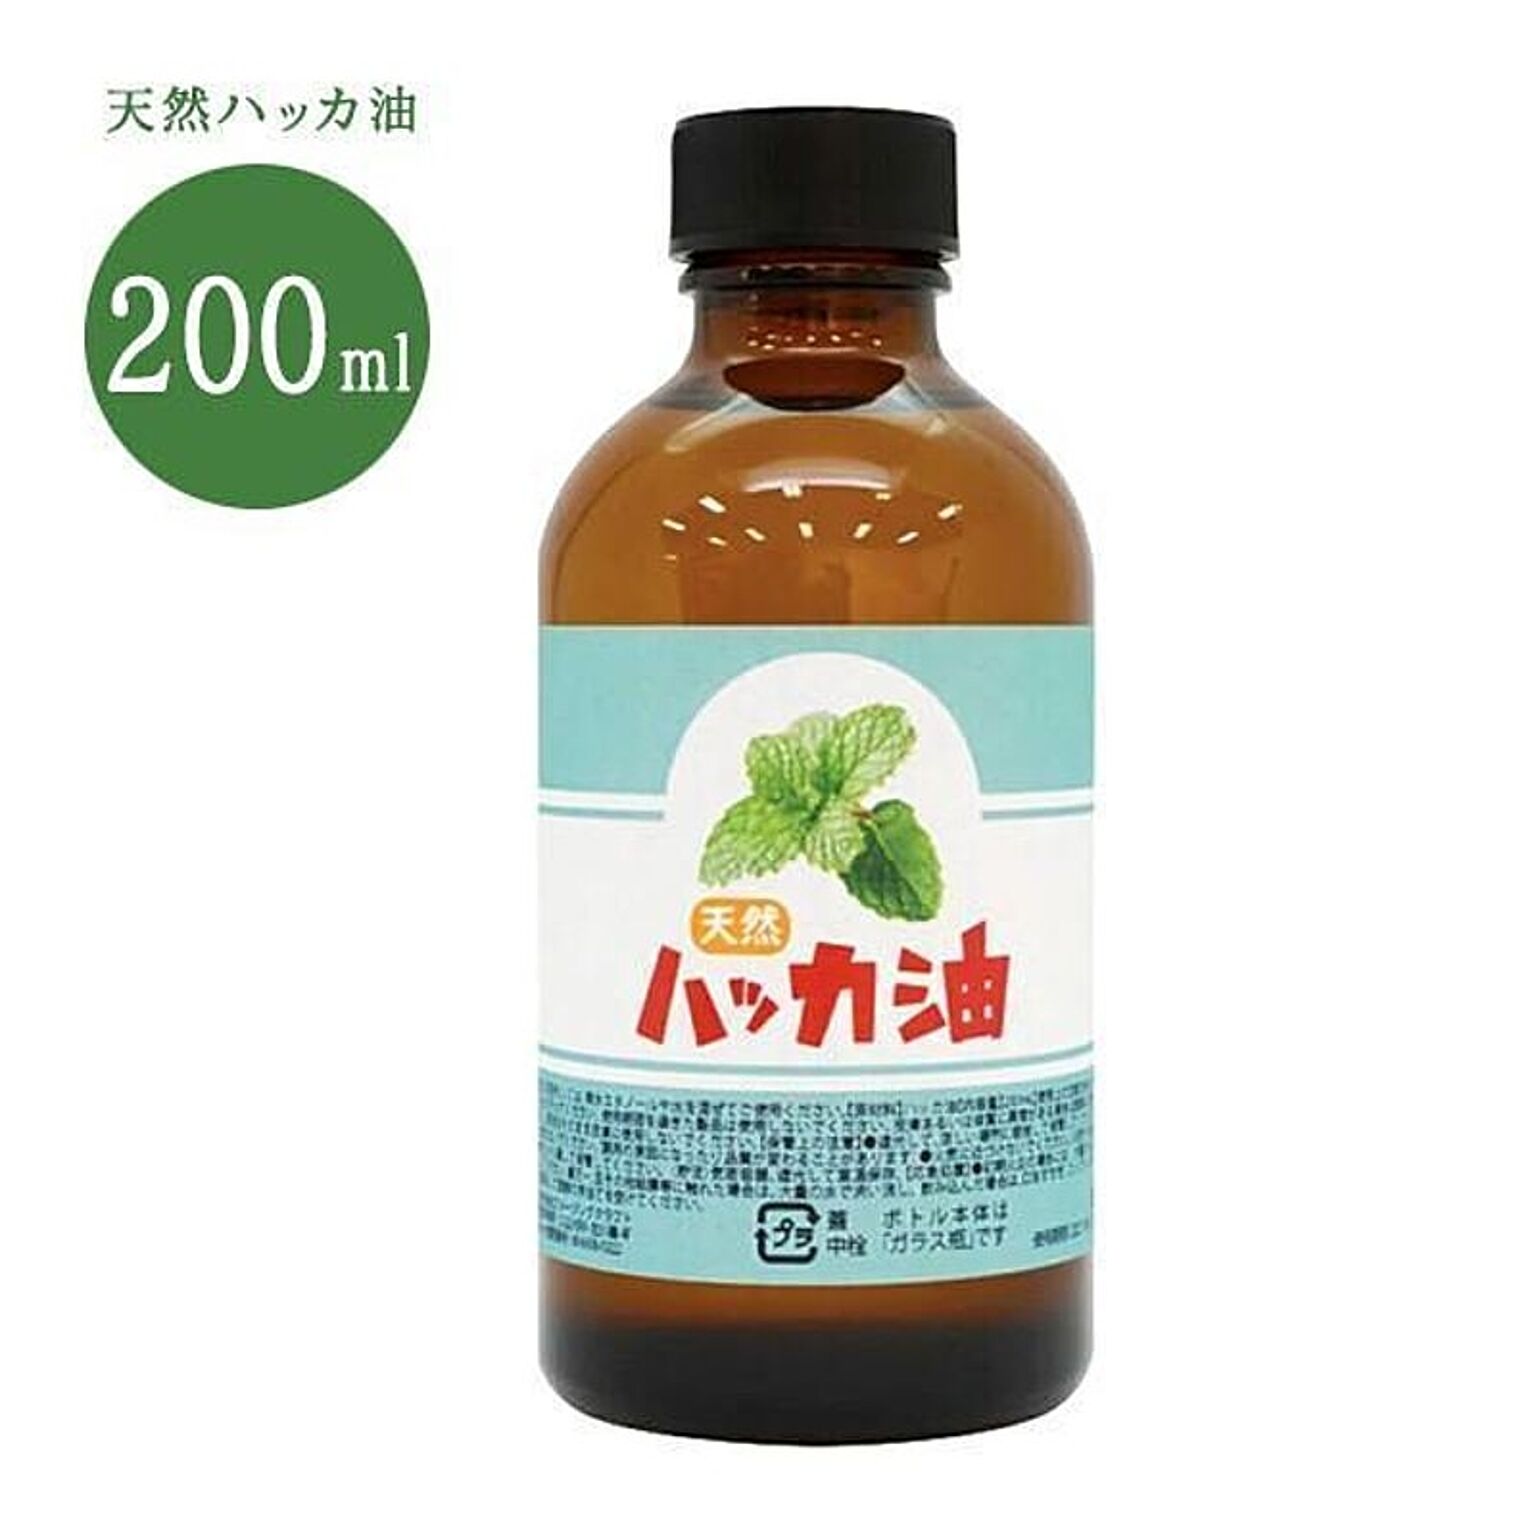 【☆60】/天然ハッカ油200ml